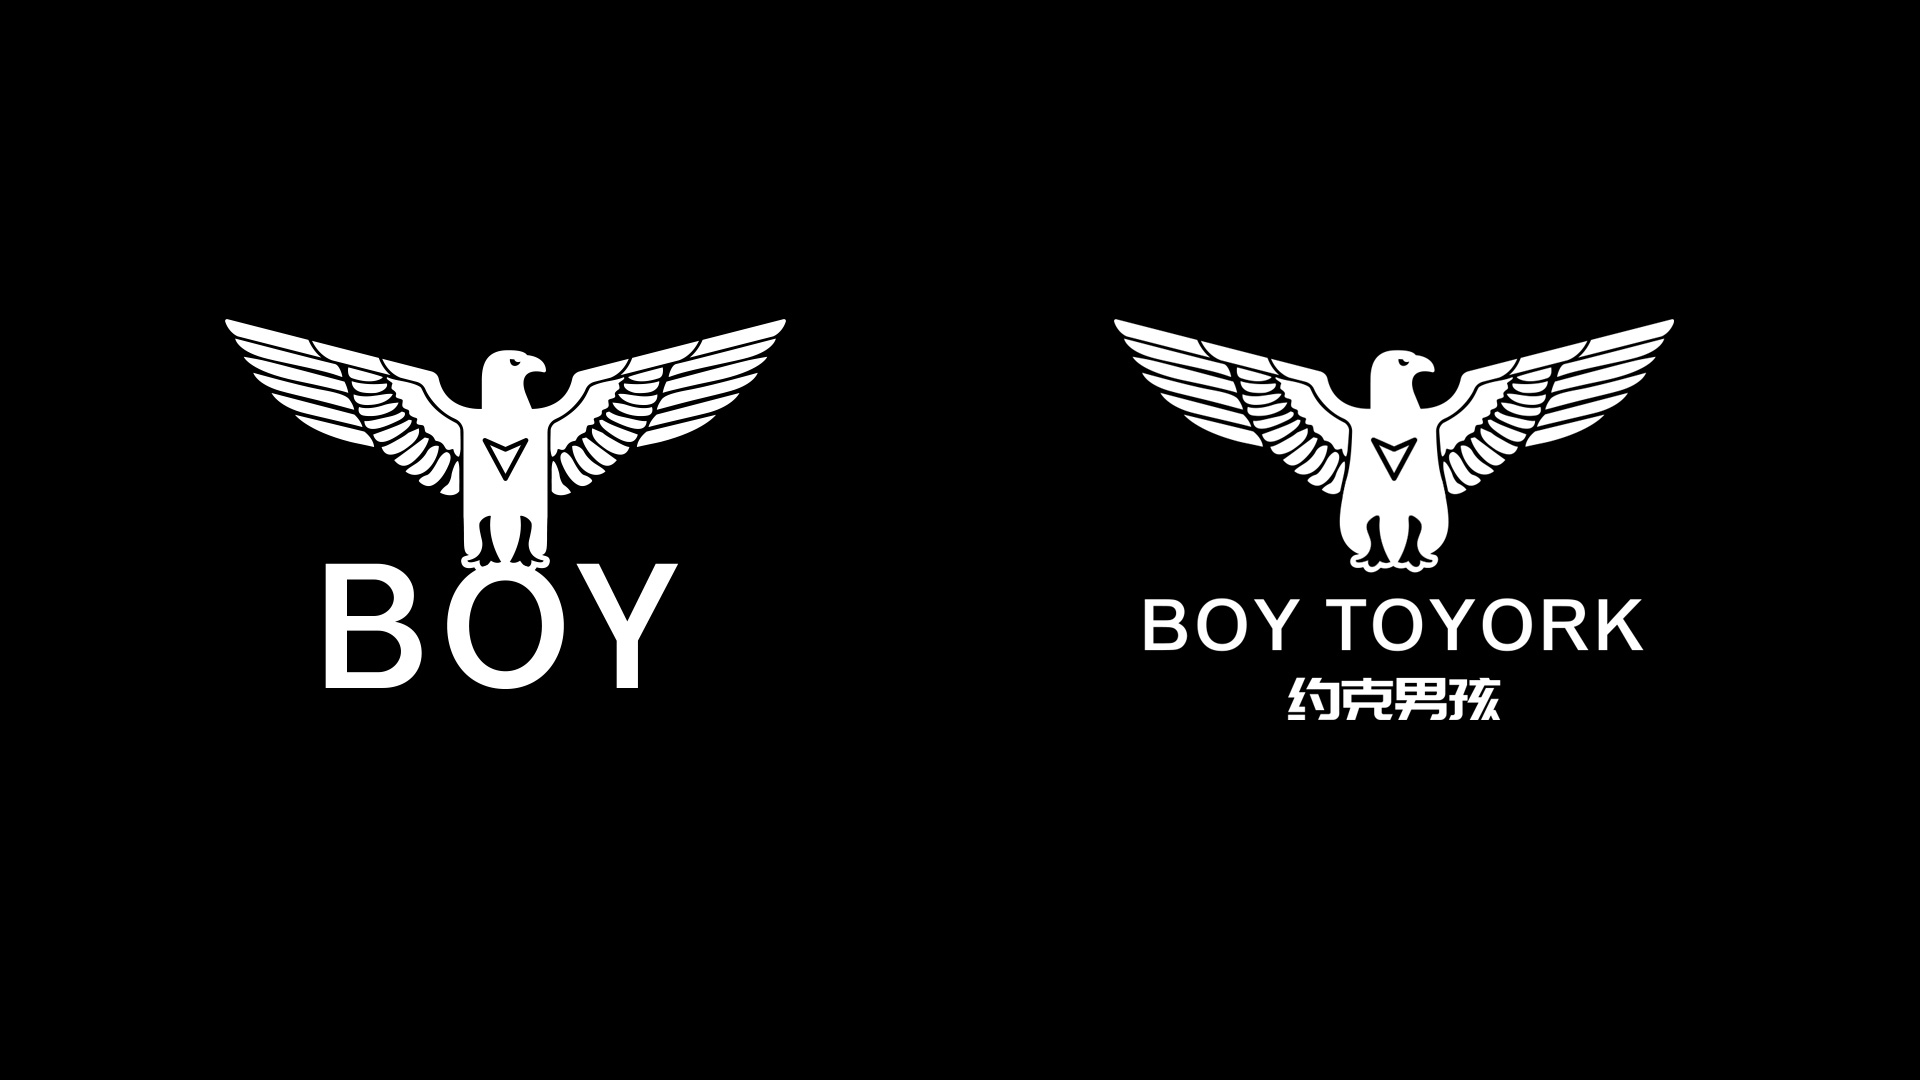 约克男孩BOY服装LOGO设计黑色反白稿.jpg